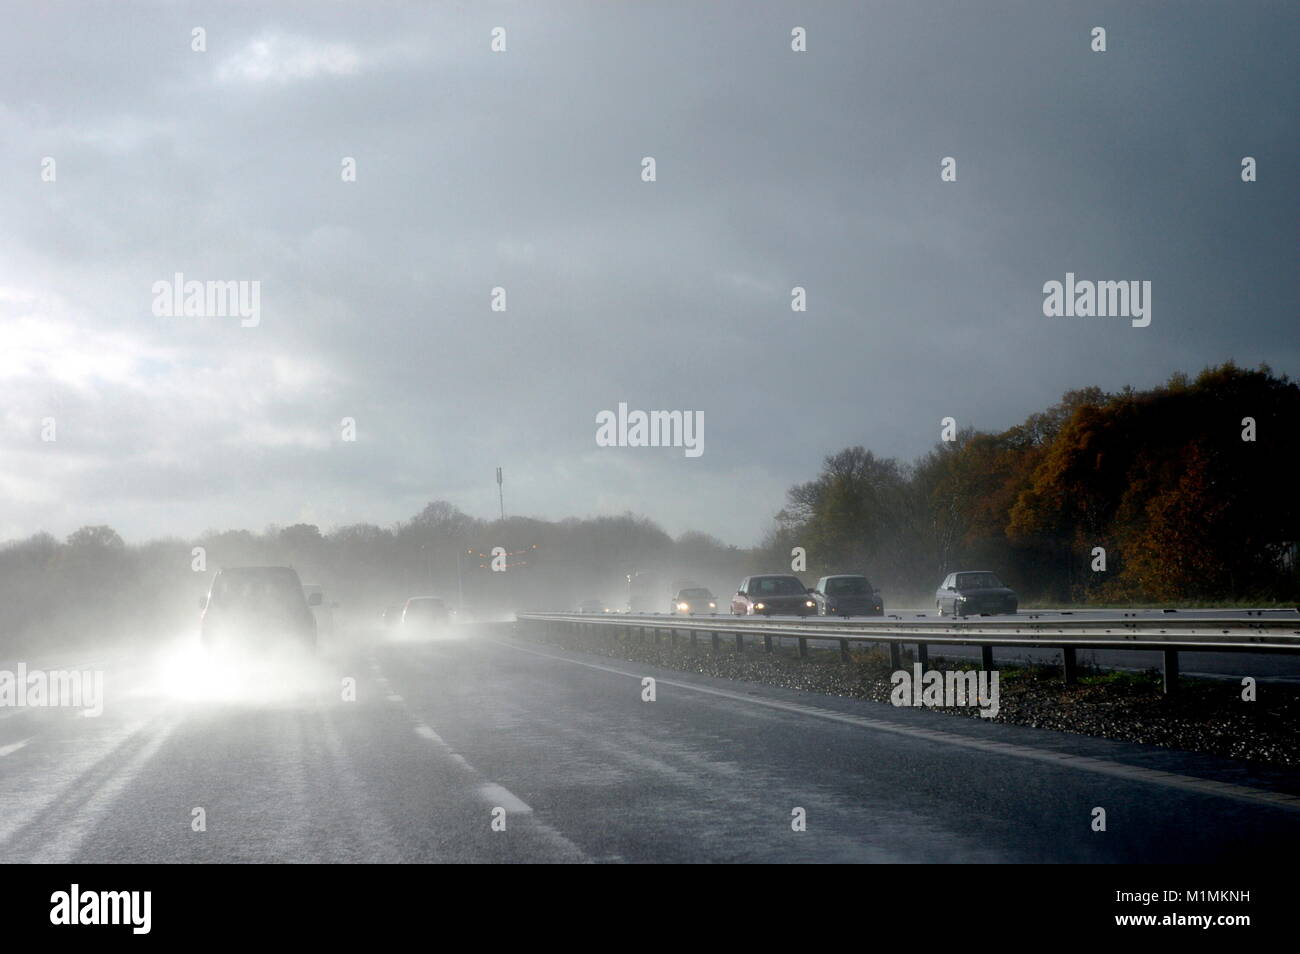 AJAXNETPHOTO. Autobahn M25, England. - Nass- und stürmischen Bedingungen auf der Autobahn M25 entfernt. Foto: Jonathan Eastland/AJAX REF: R 62611 1263 Stockfoto